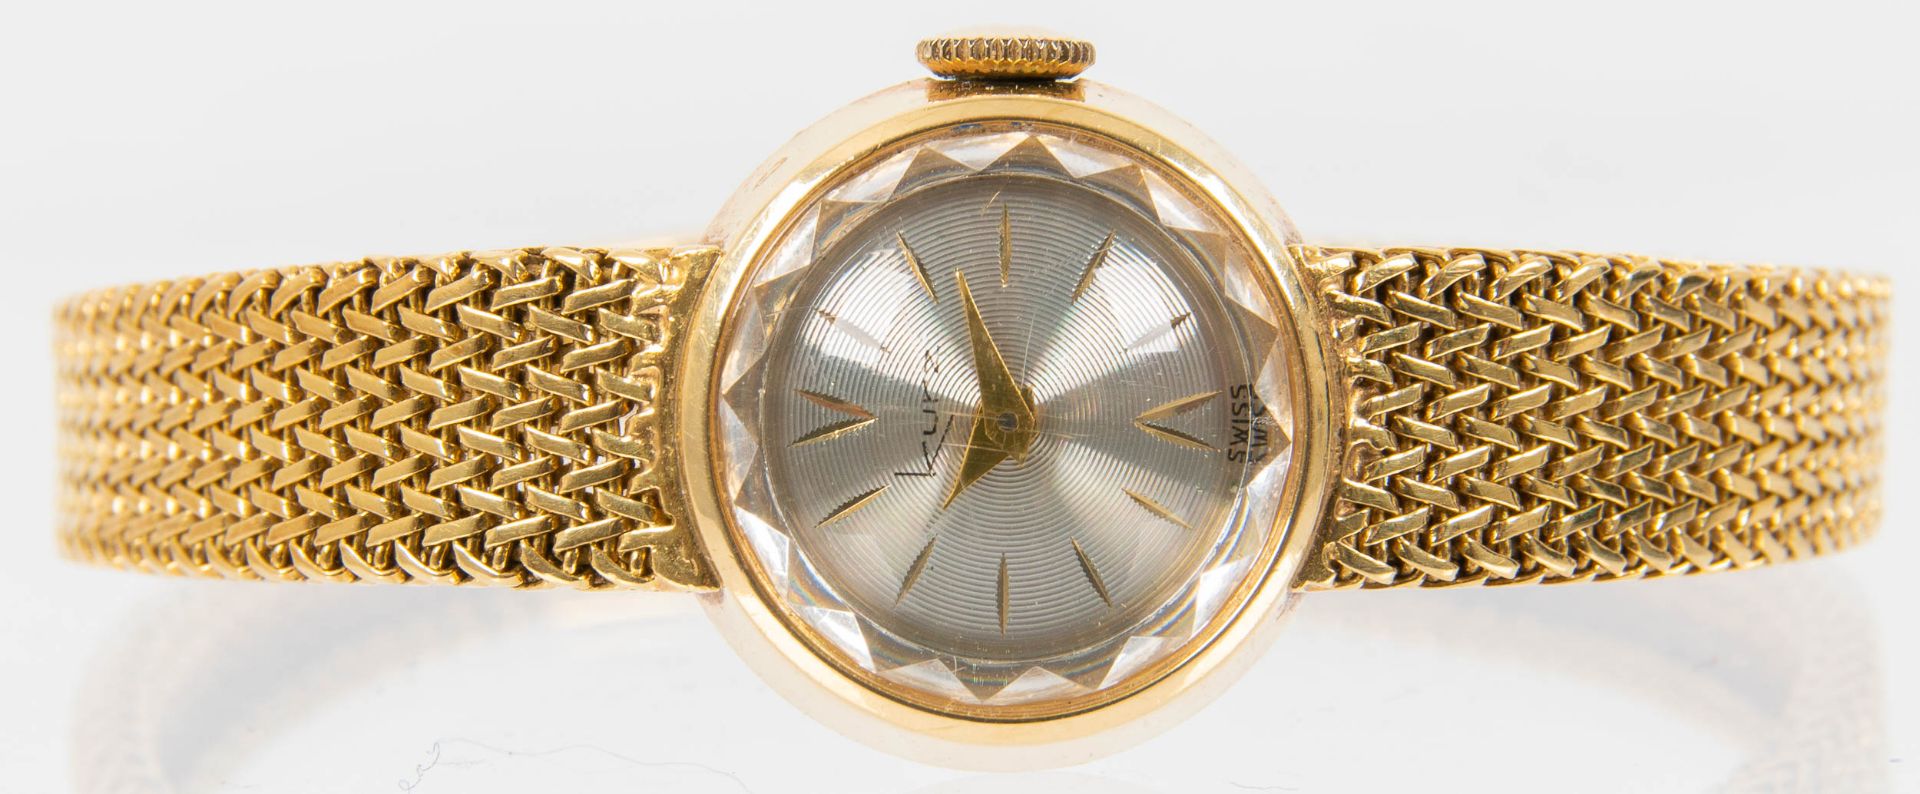 Klassische Damenarmbanduhr der Marke "KURZ-SWISS", Gehäuse und Armband in 750er Gelbgold, Werk läuf - Image 4 of 9